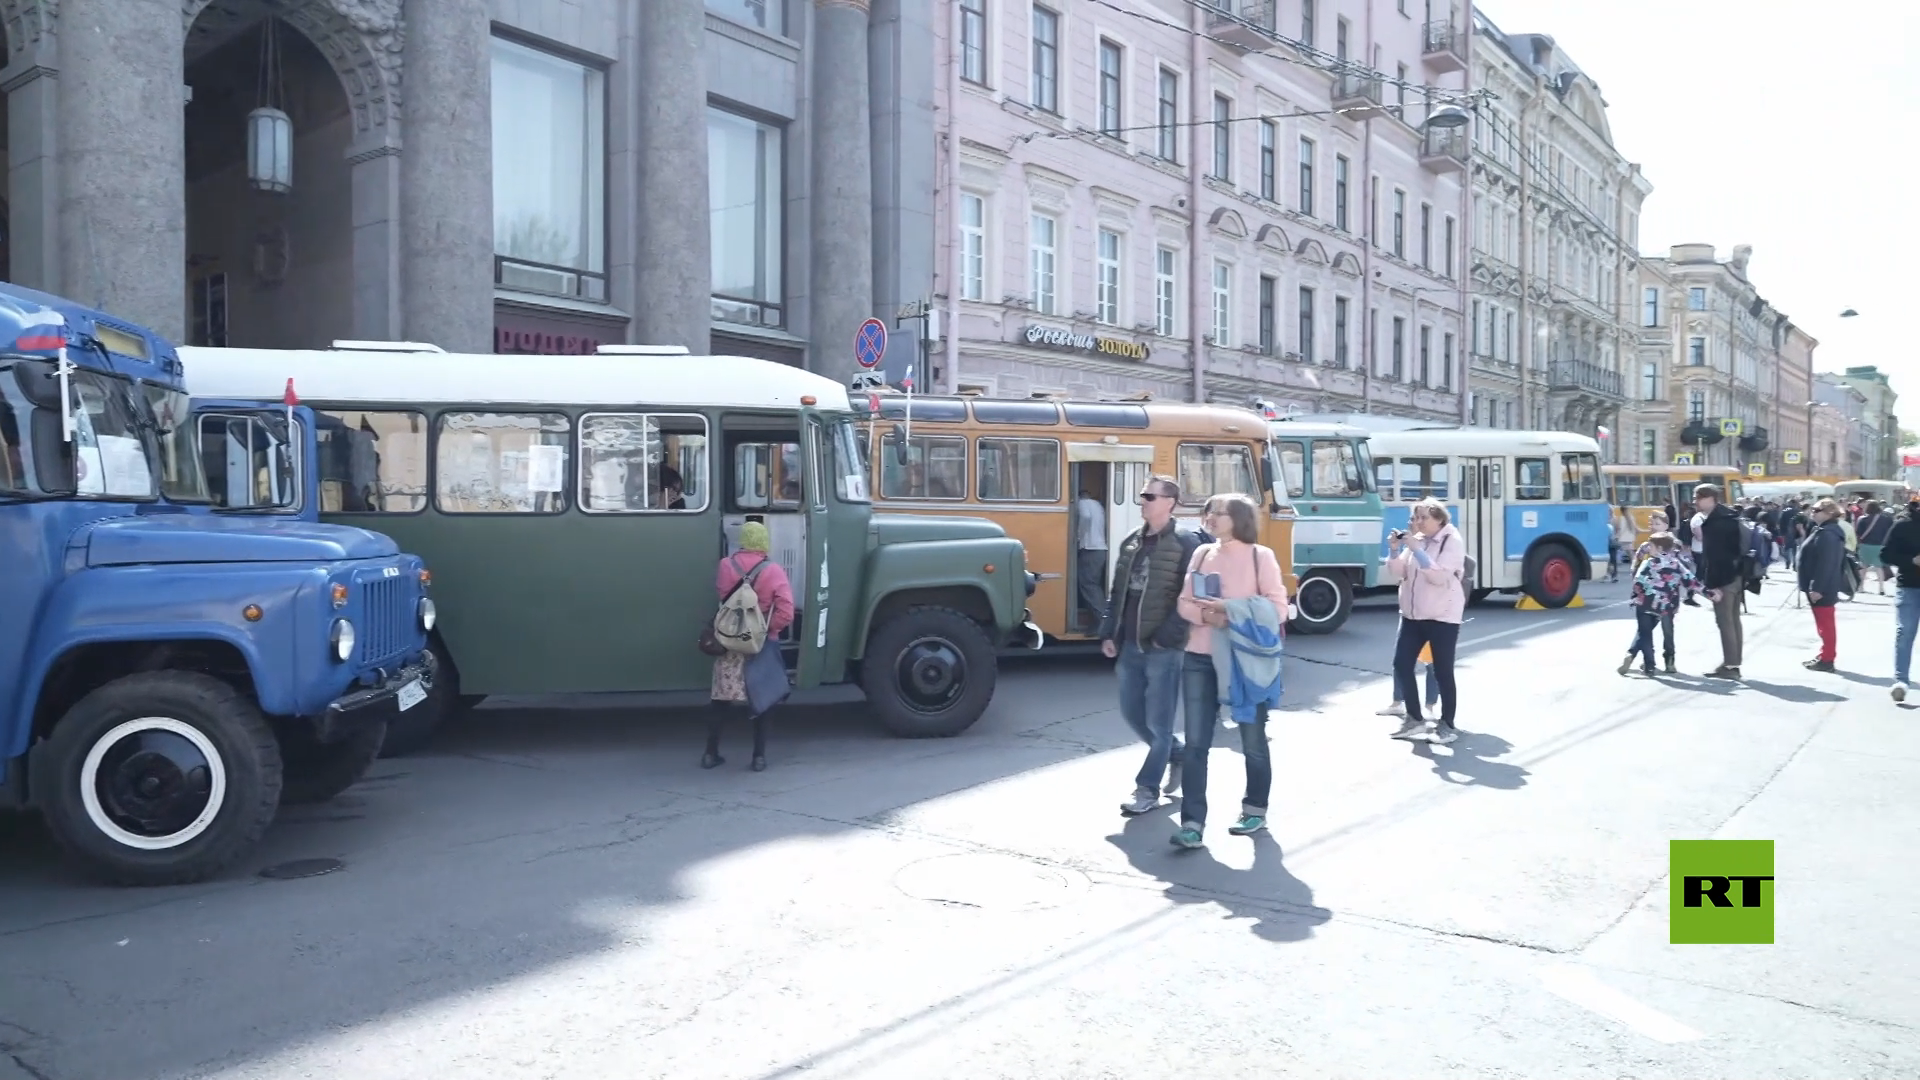 بالفيديو.. عرض للسيارات والحافلات الروسية القديمة في بطرسبورغ